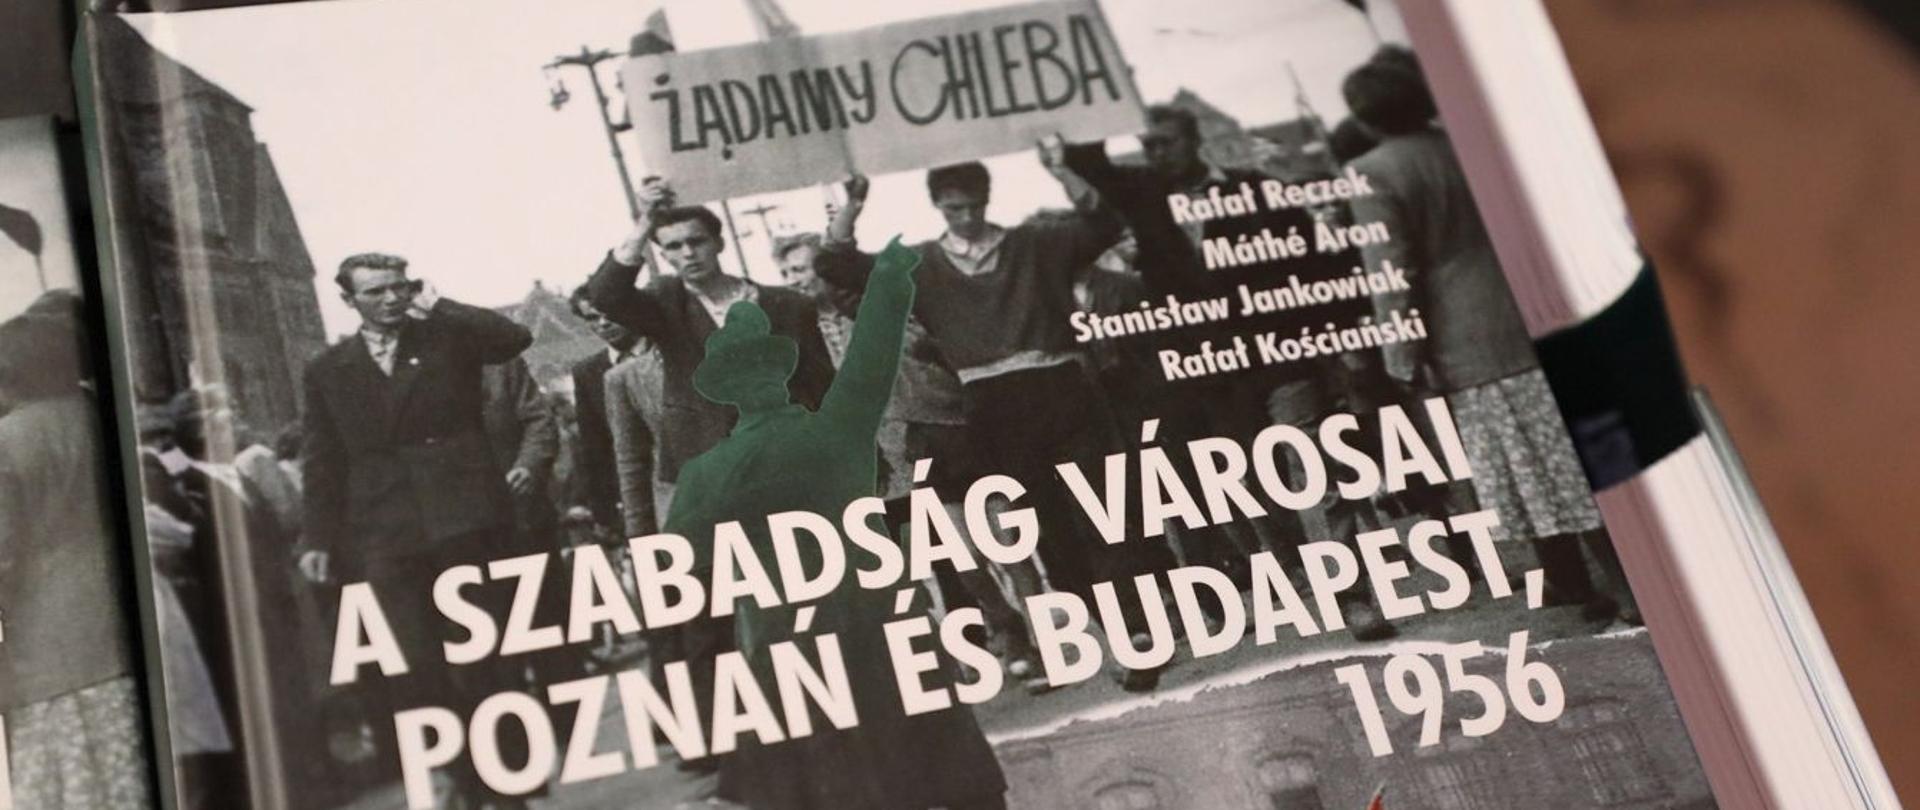 "A szabadság városai Poznań és Budapest, 1956"